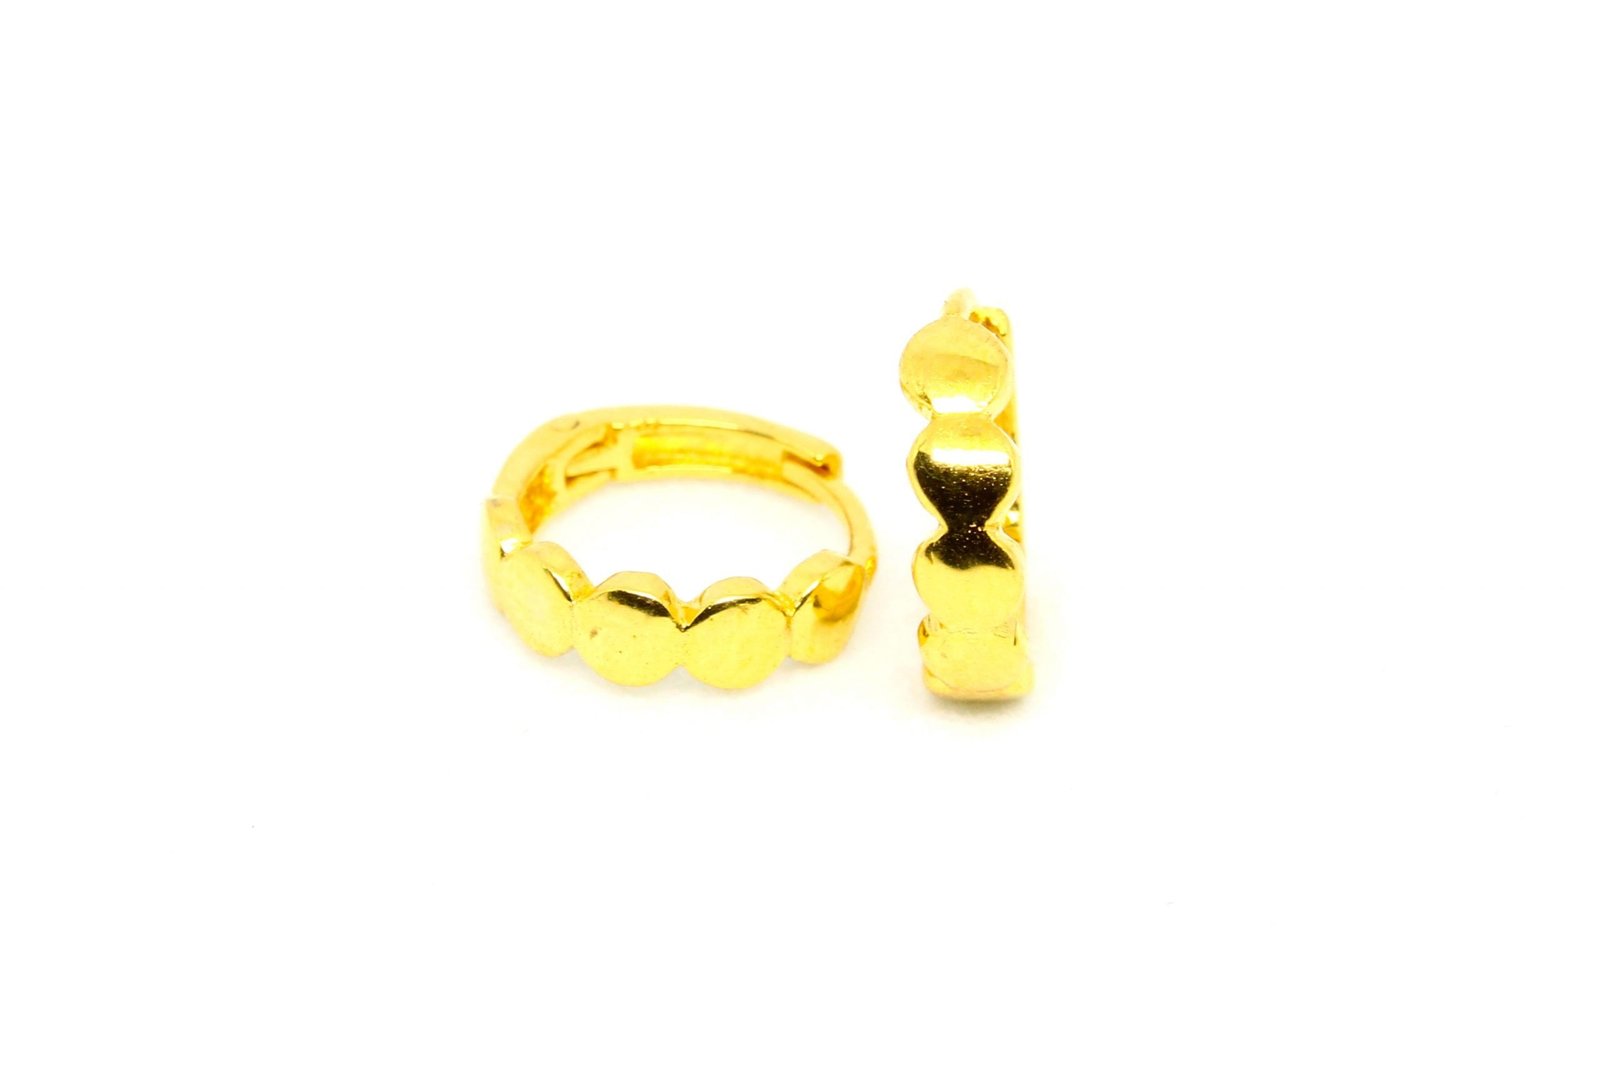 22K Gold Jhumkas (Buttalu) - Gold Dangle Earrings - Hoop Earrings (Ear Bali)  - 235-GJH2450 in 8.100 Grams